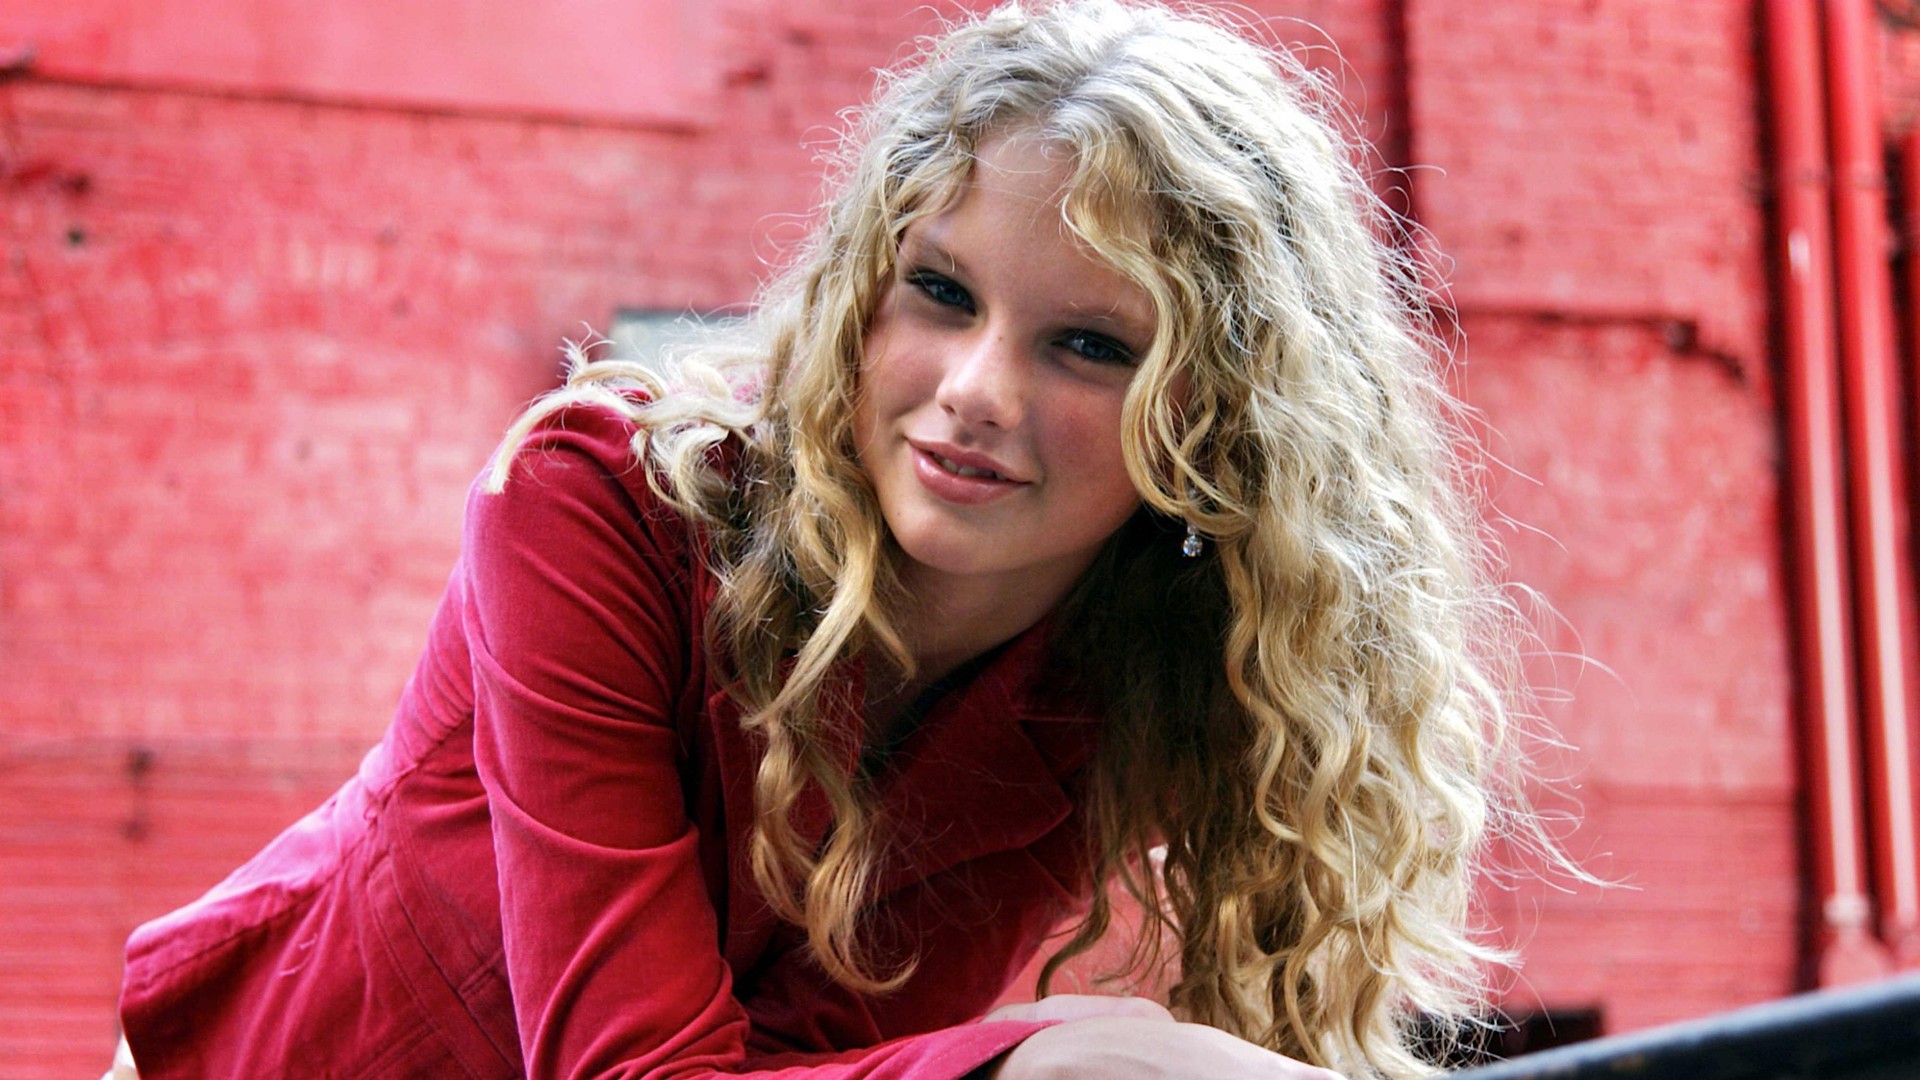 Taylor Swift In Pink - Taylor Swift Phone Wallpaper 4k - HD Wallpaper 